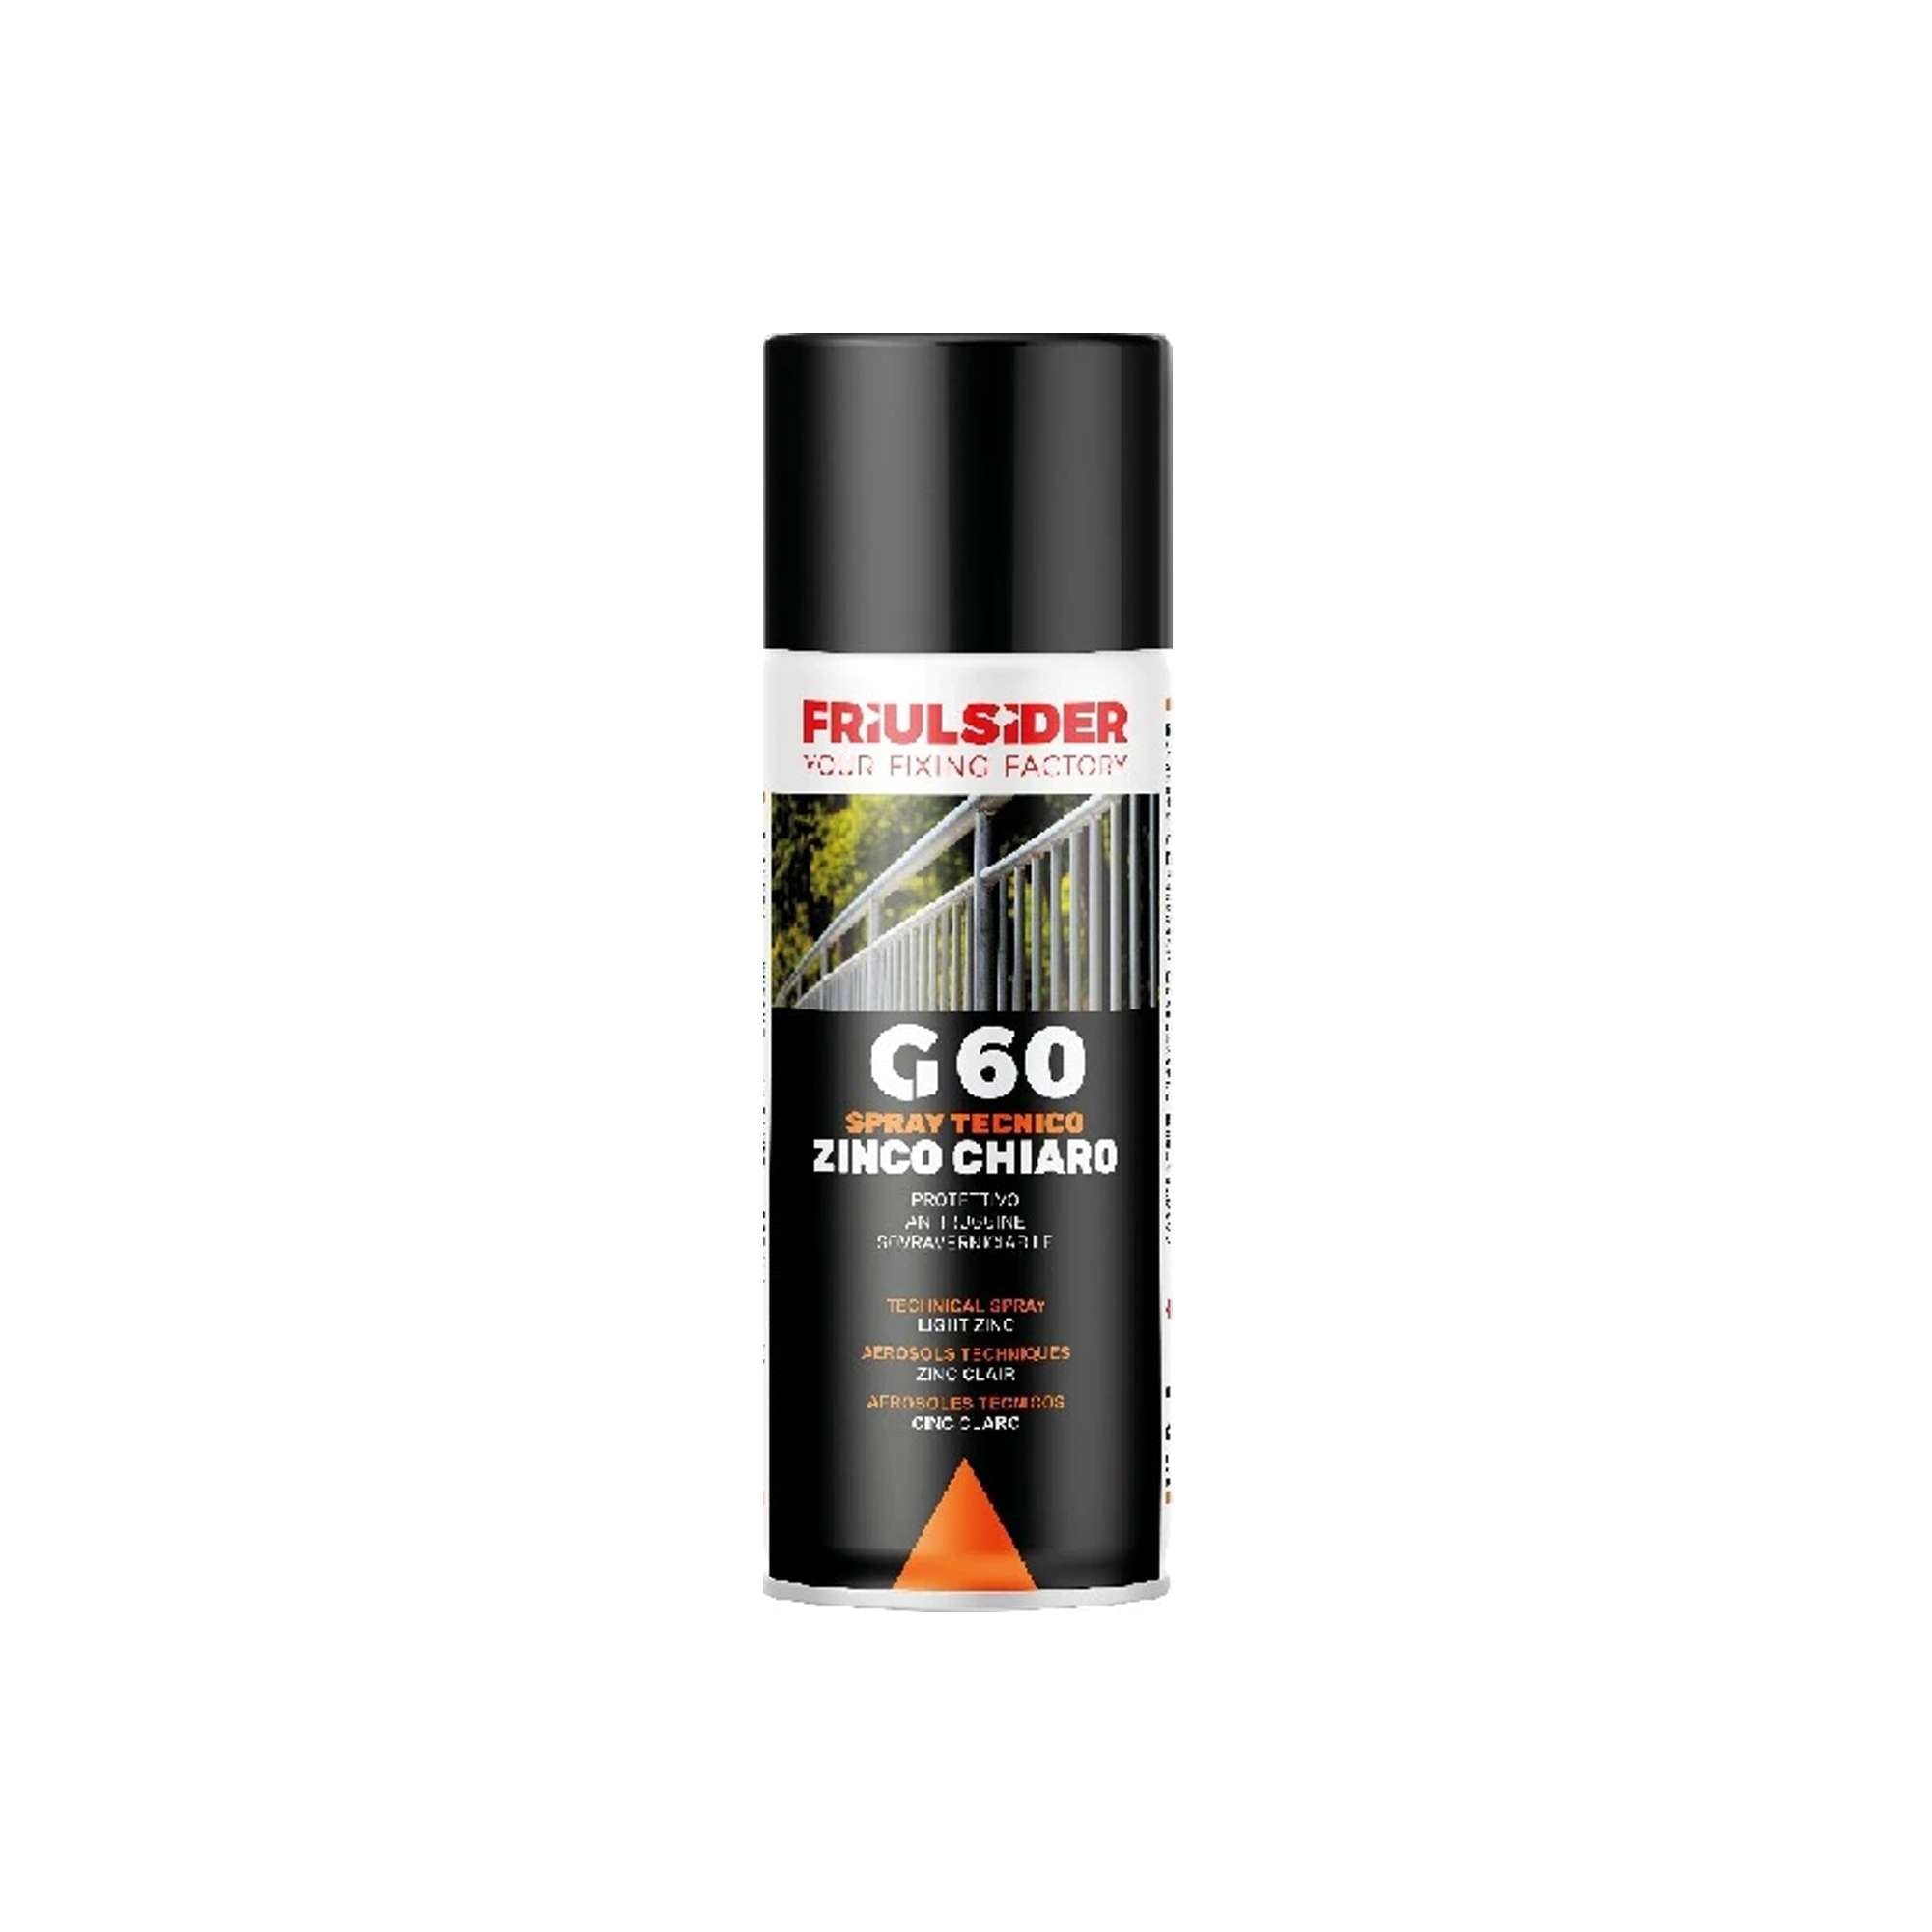 Spray zinco chiaro ml.400 - conf. 12pz - G6000 Friulsider